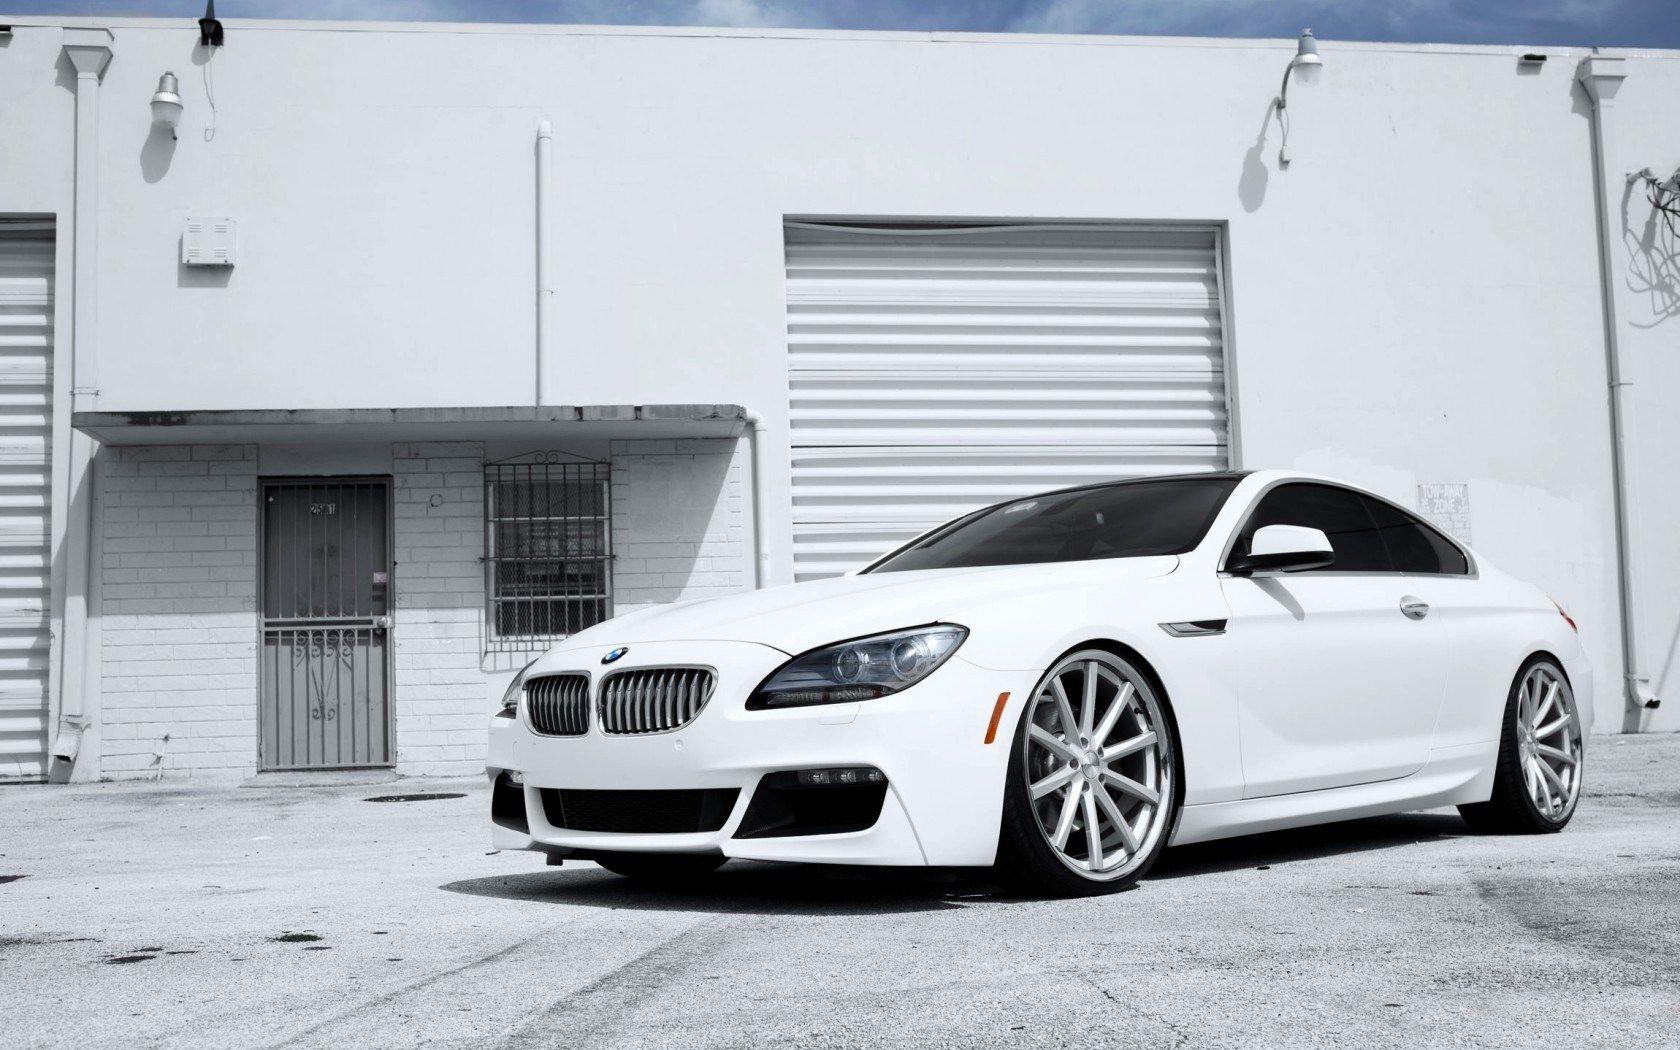 White BMW 6 Series Wallpaper 43418 1680x1050 px